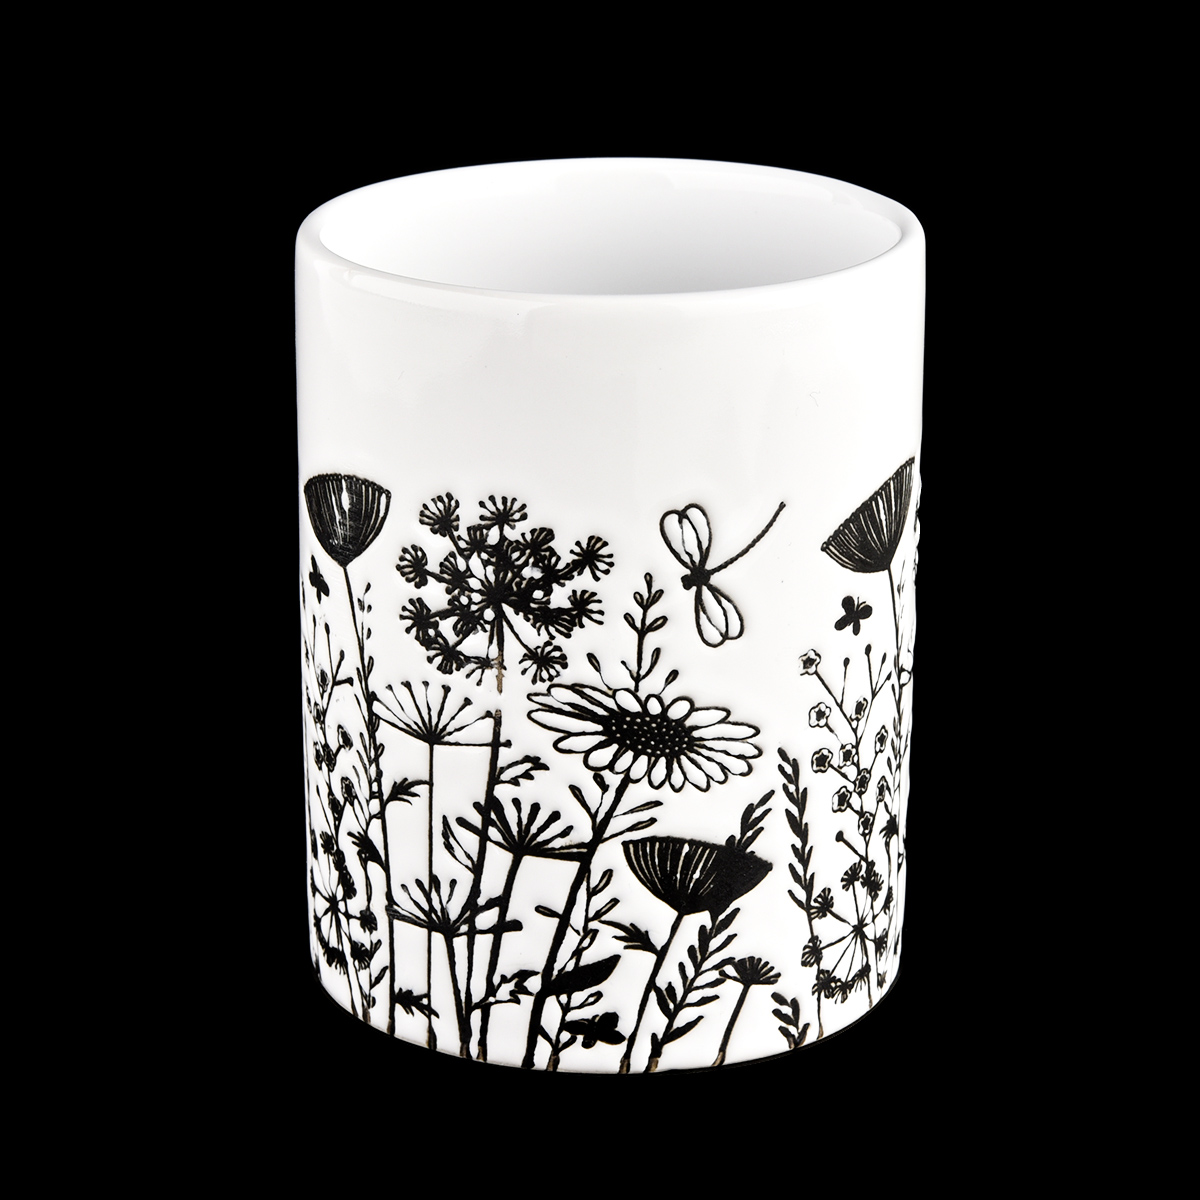 12 oz hvit keramikkkar med dekorative sorte blomstermønstre